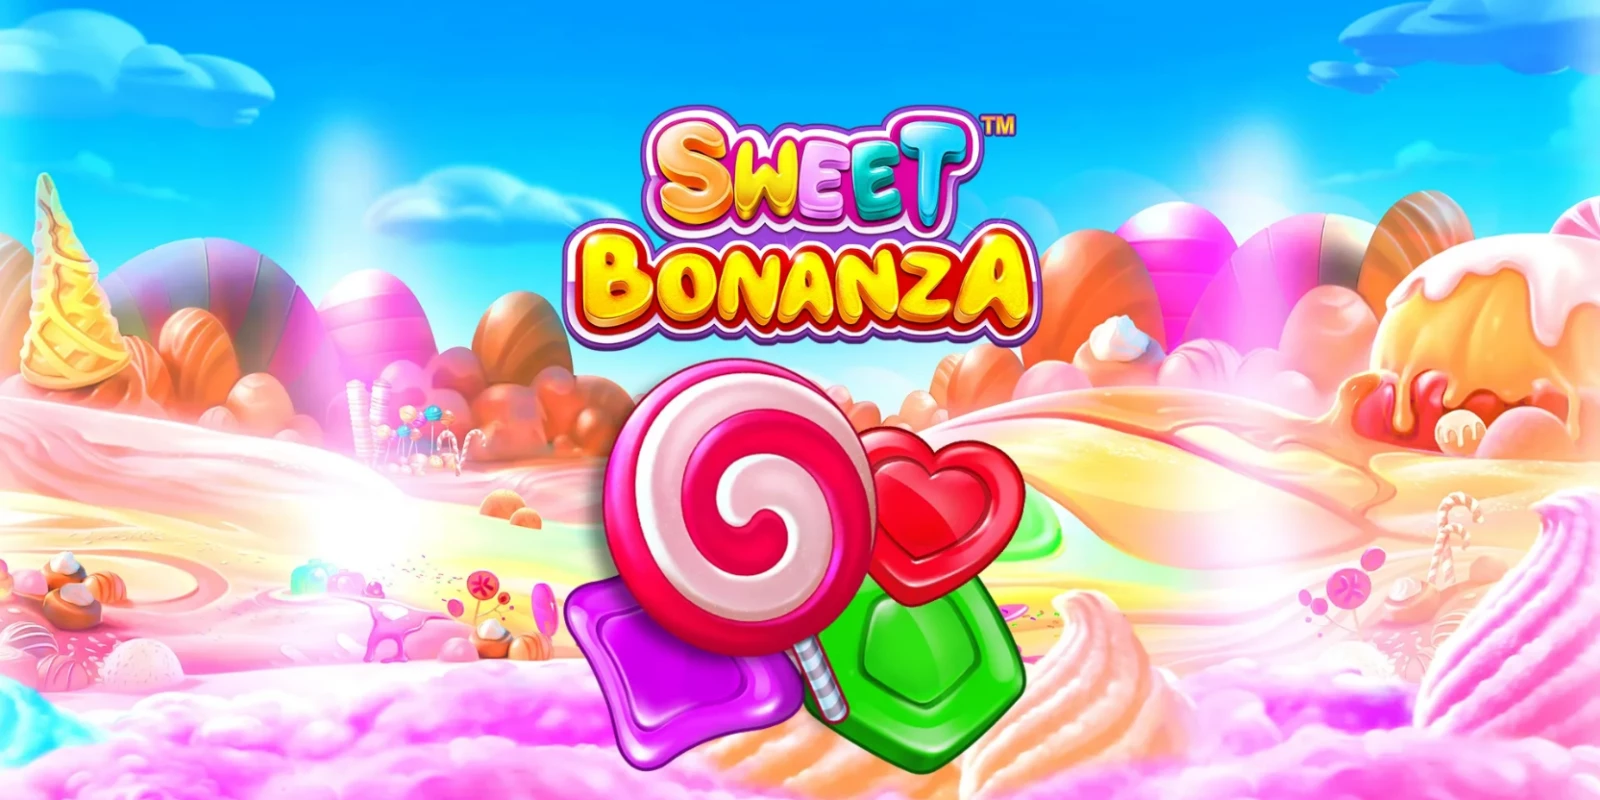 Sweet Bonanza Como Jogar